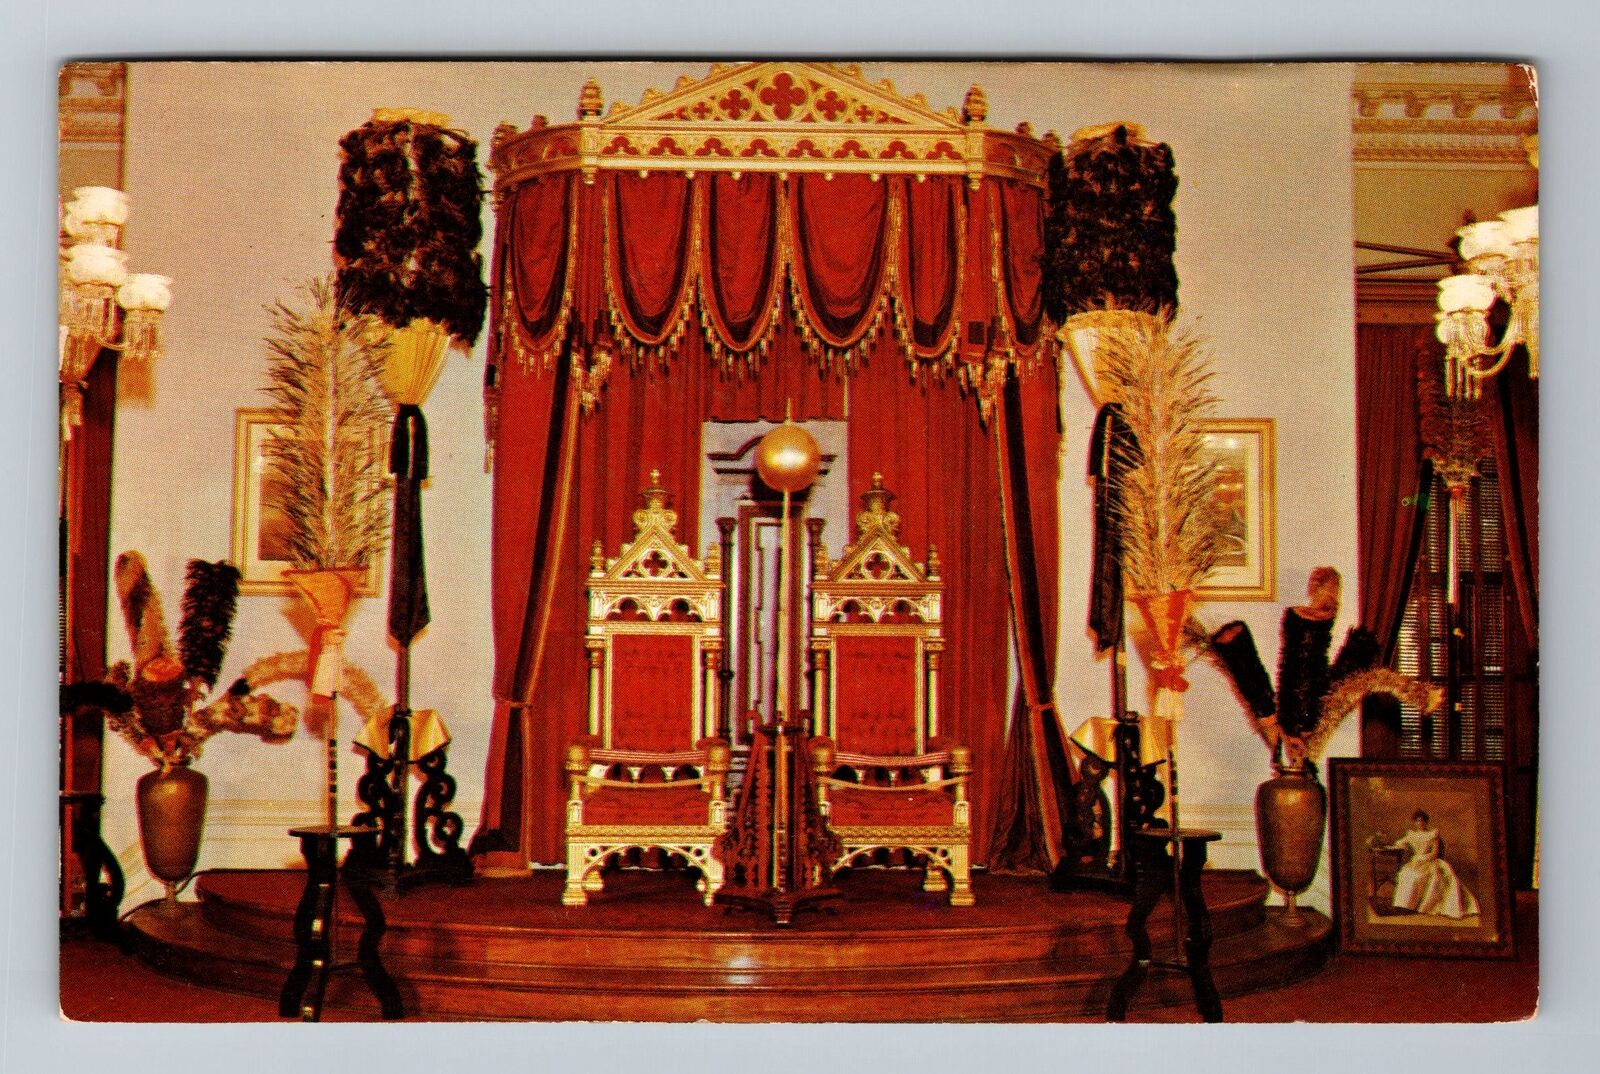 HI-Hawaii, Throne Hawaii, Scenic Exterior, c1958 Vintage Postcard